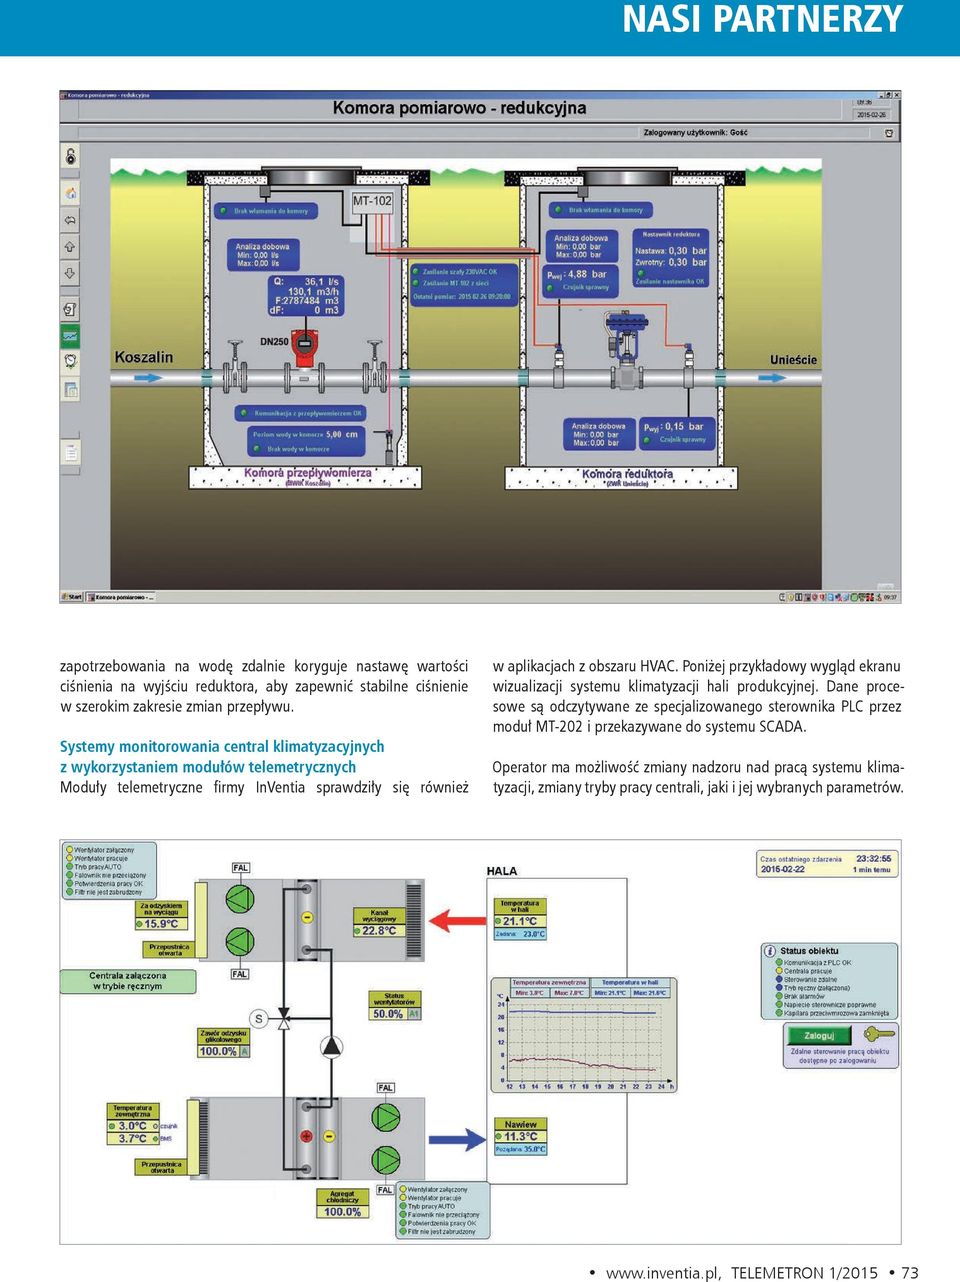 Poniżej przykładowy wygląd ekranu wizualizacji systemu klimatyzacji hali produkcyjnej.